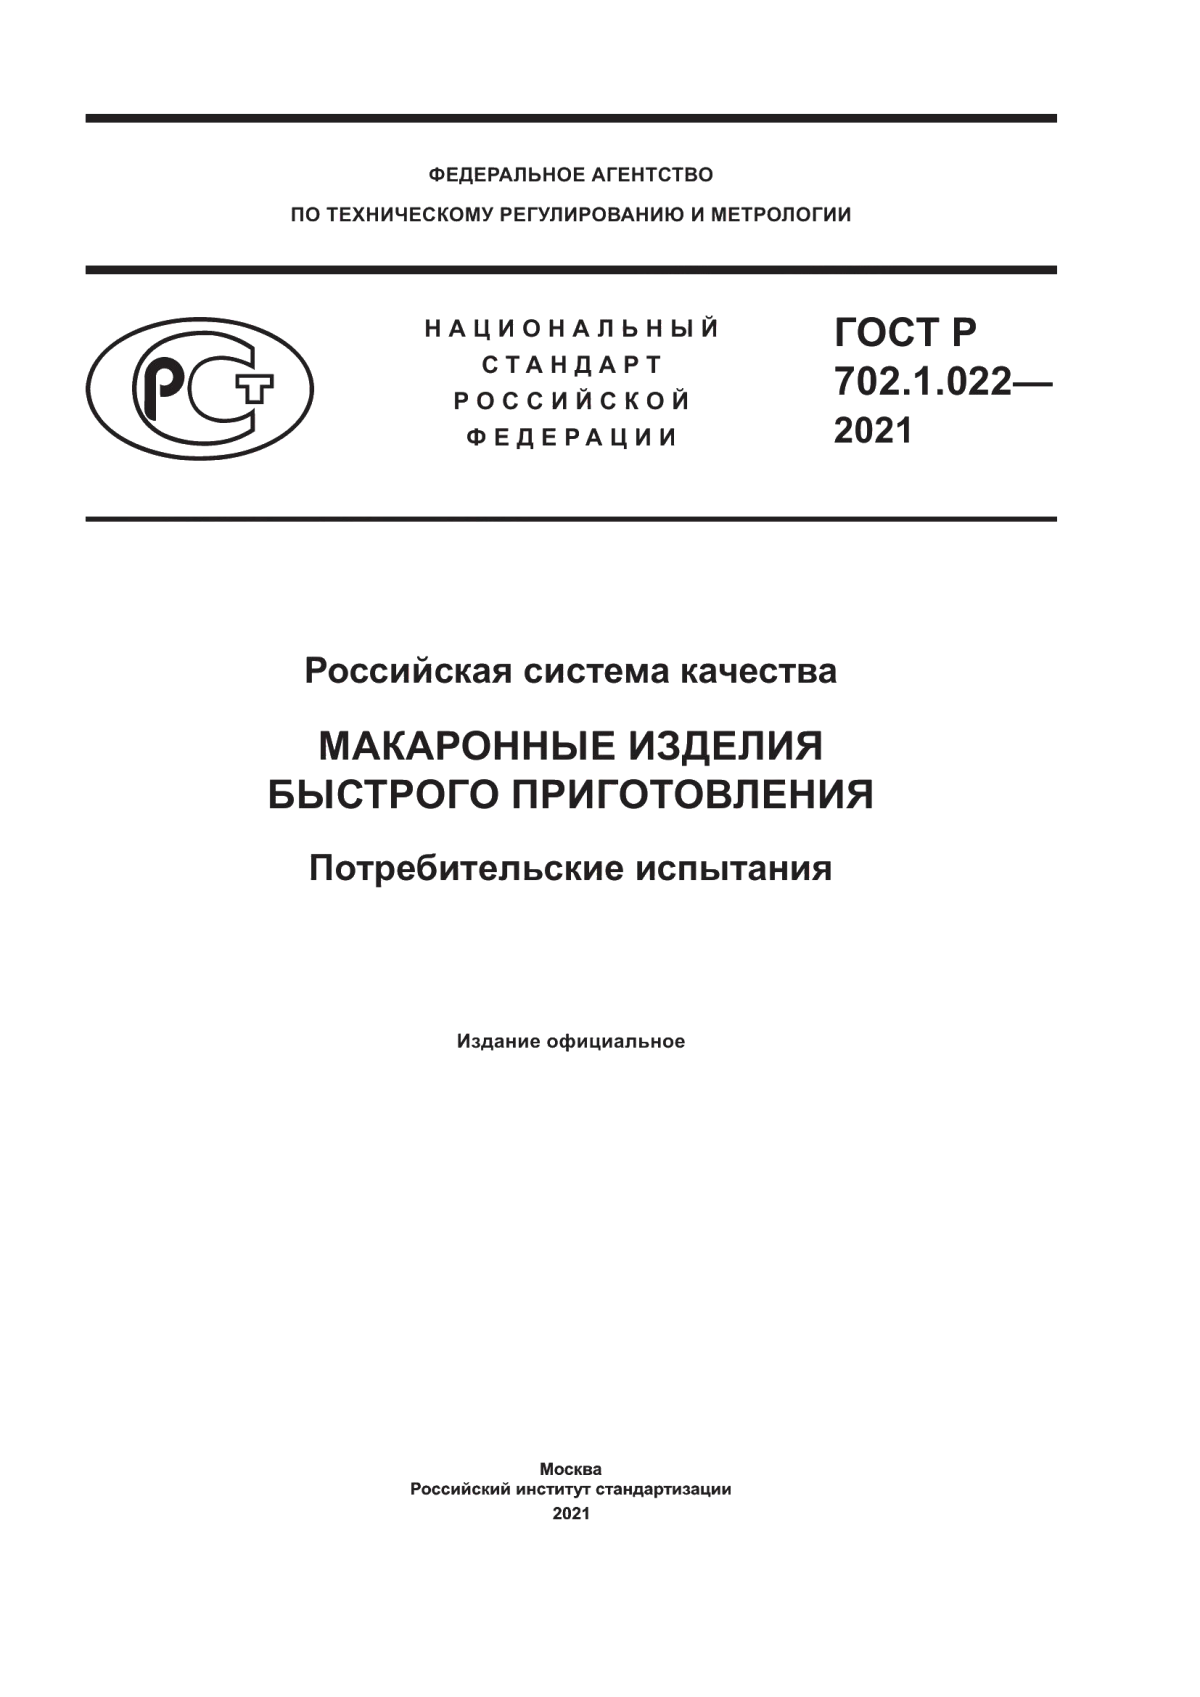 ГОСТ Р 702.1.022-2021 Российская система качества. Макаронные изделия быстрого приготовления. Потребительские испытания